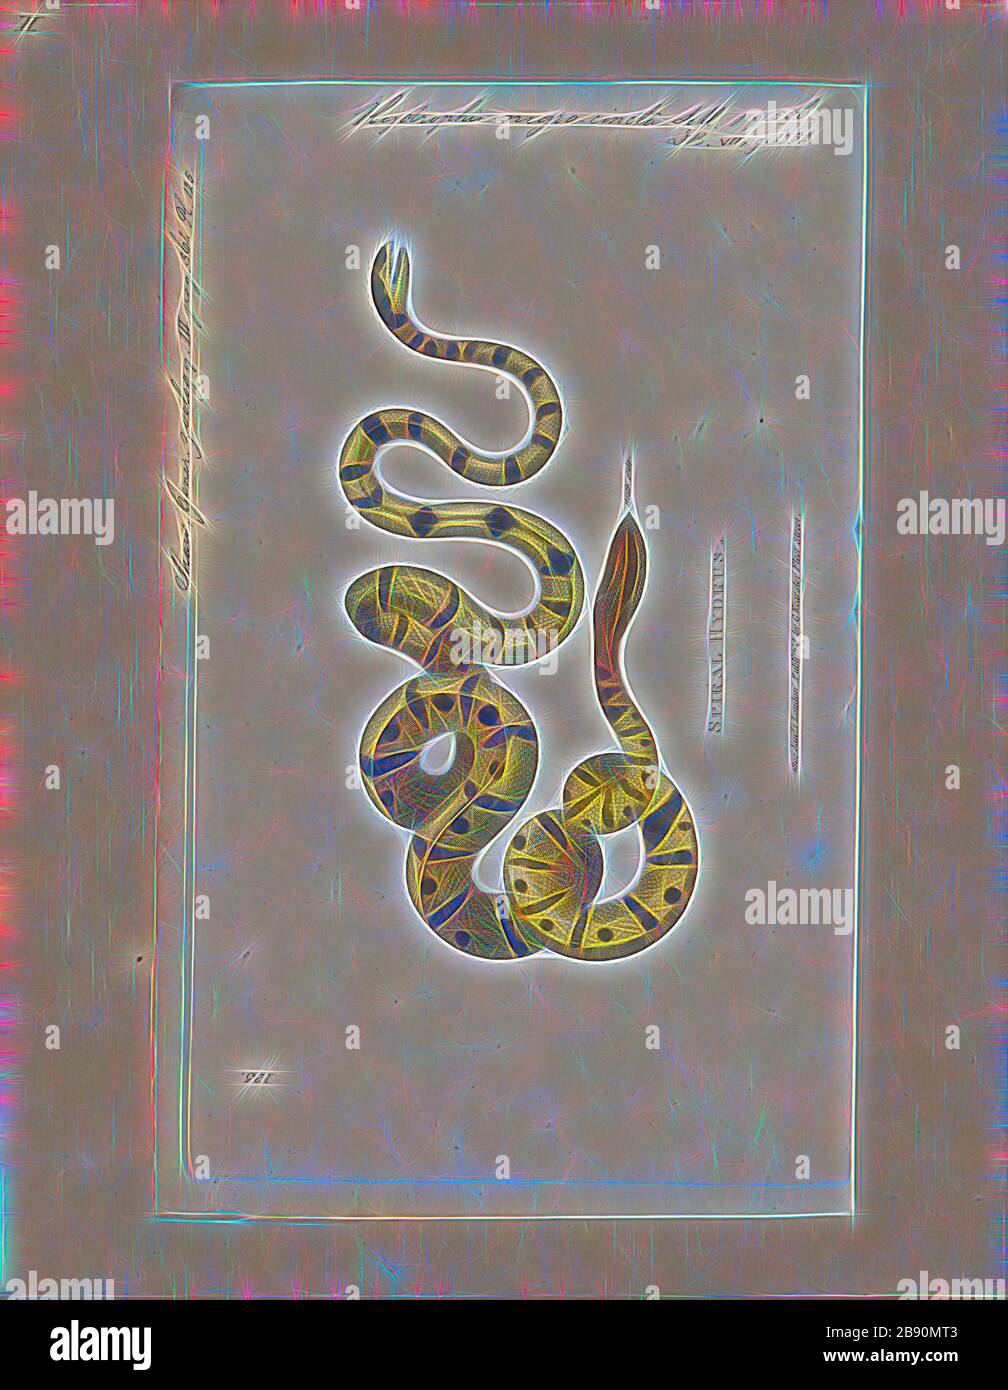 Hydrophis nigrocincta, Print, Hydrophis nigrocinctus è una specie di serpente marino di vanomous Elapidae (Hydrofiinae-Sea snake). Distribuzione: Oceano Indiano: India, Bangladesh, Sri Lanka, Myanmar (= Birmania), Thailandia, Malesia., 1700-1880, Reimagined by Gibon, design di calore allegro di luminosità e raggi di luce radianza. Arte classica reinventata con un tocco moderno. La fotografia ispirata al futurismo, che abbraccia l'energia dinamica della tecnologia moderna, del movimento, della velocità e rivoluziona la cultura. Foto Stock